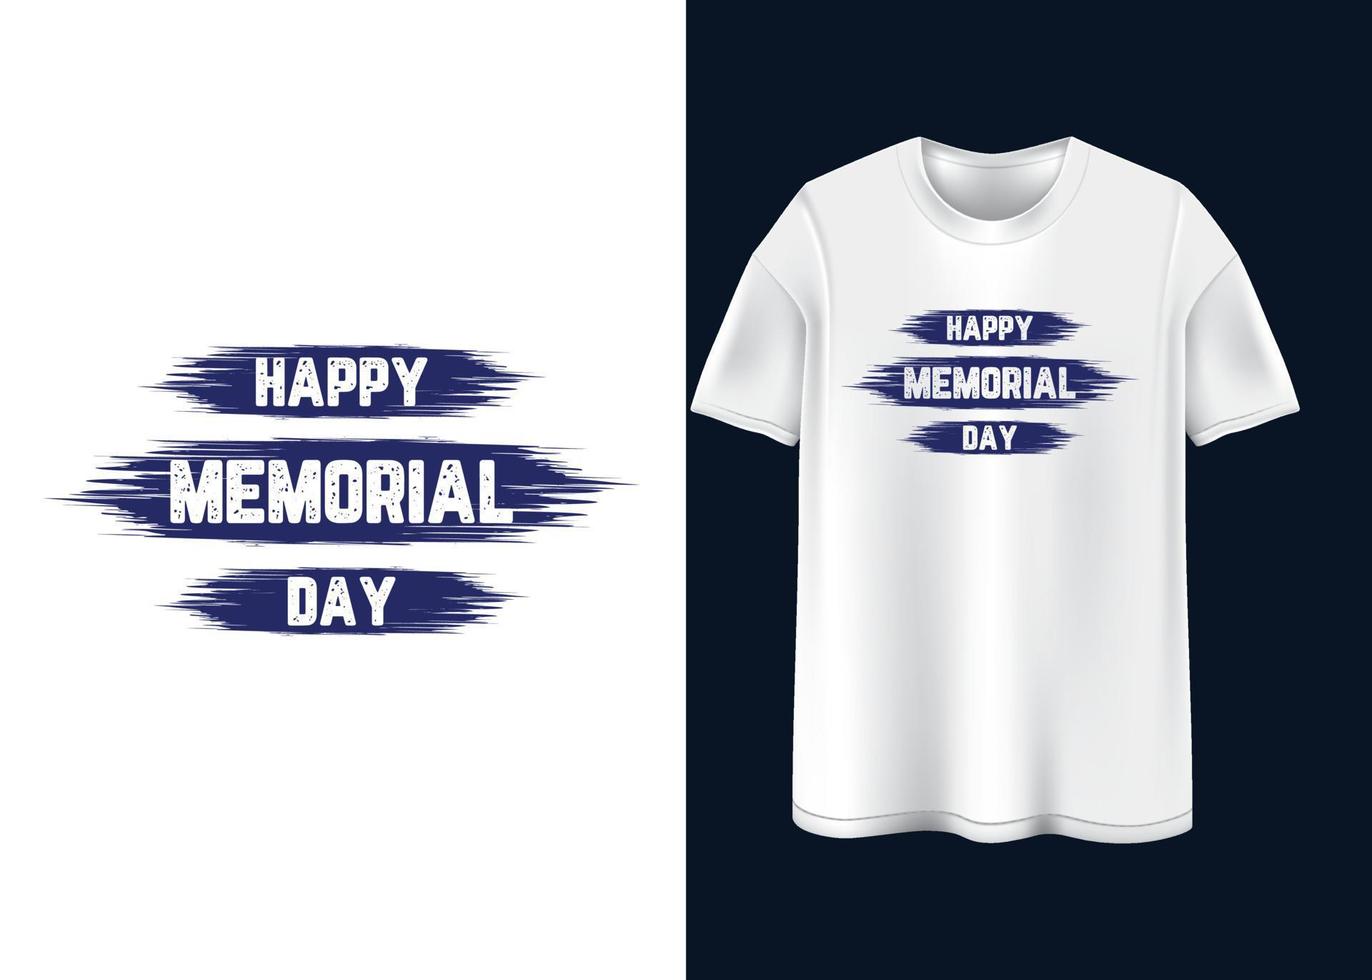 feliz dia do memorial tipografia design de camiseta vetor